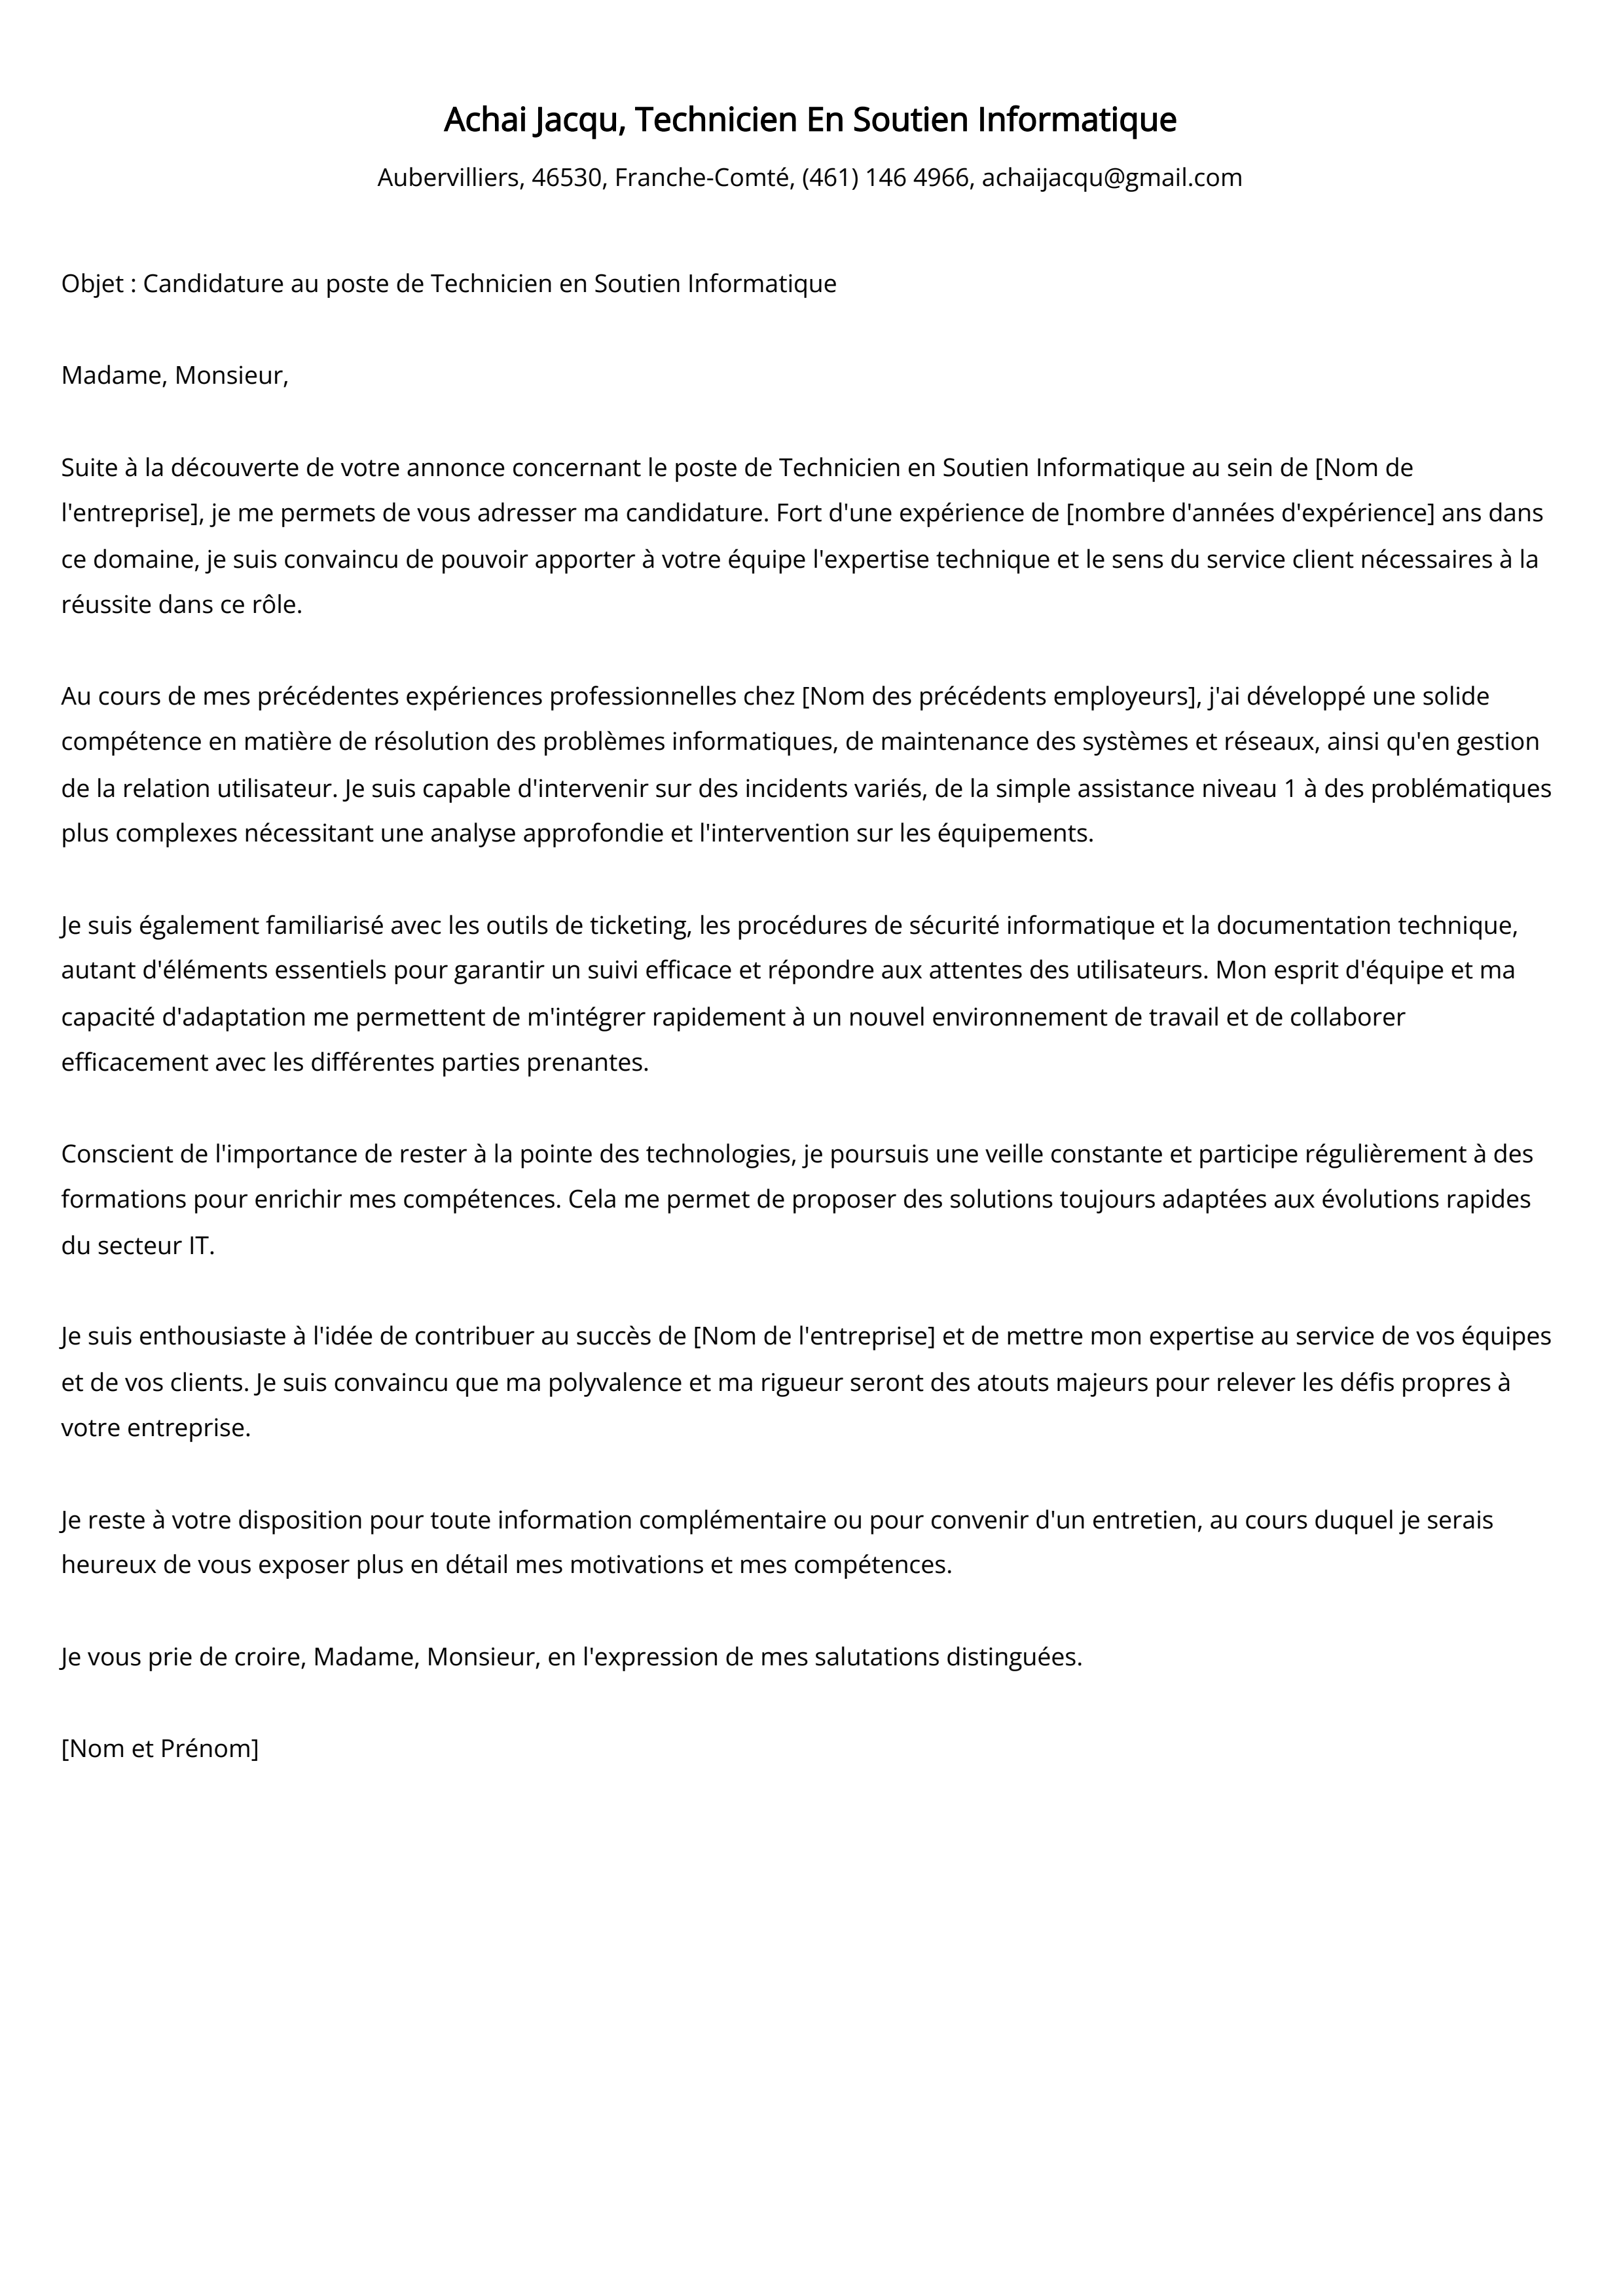 Technicien En Soutien Informatique Cover Letter Example